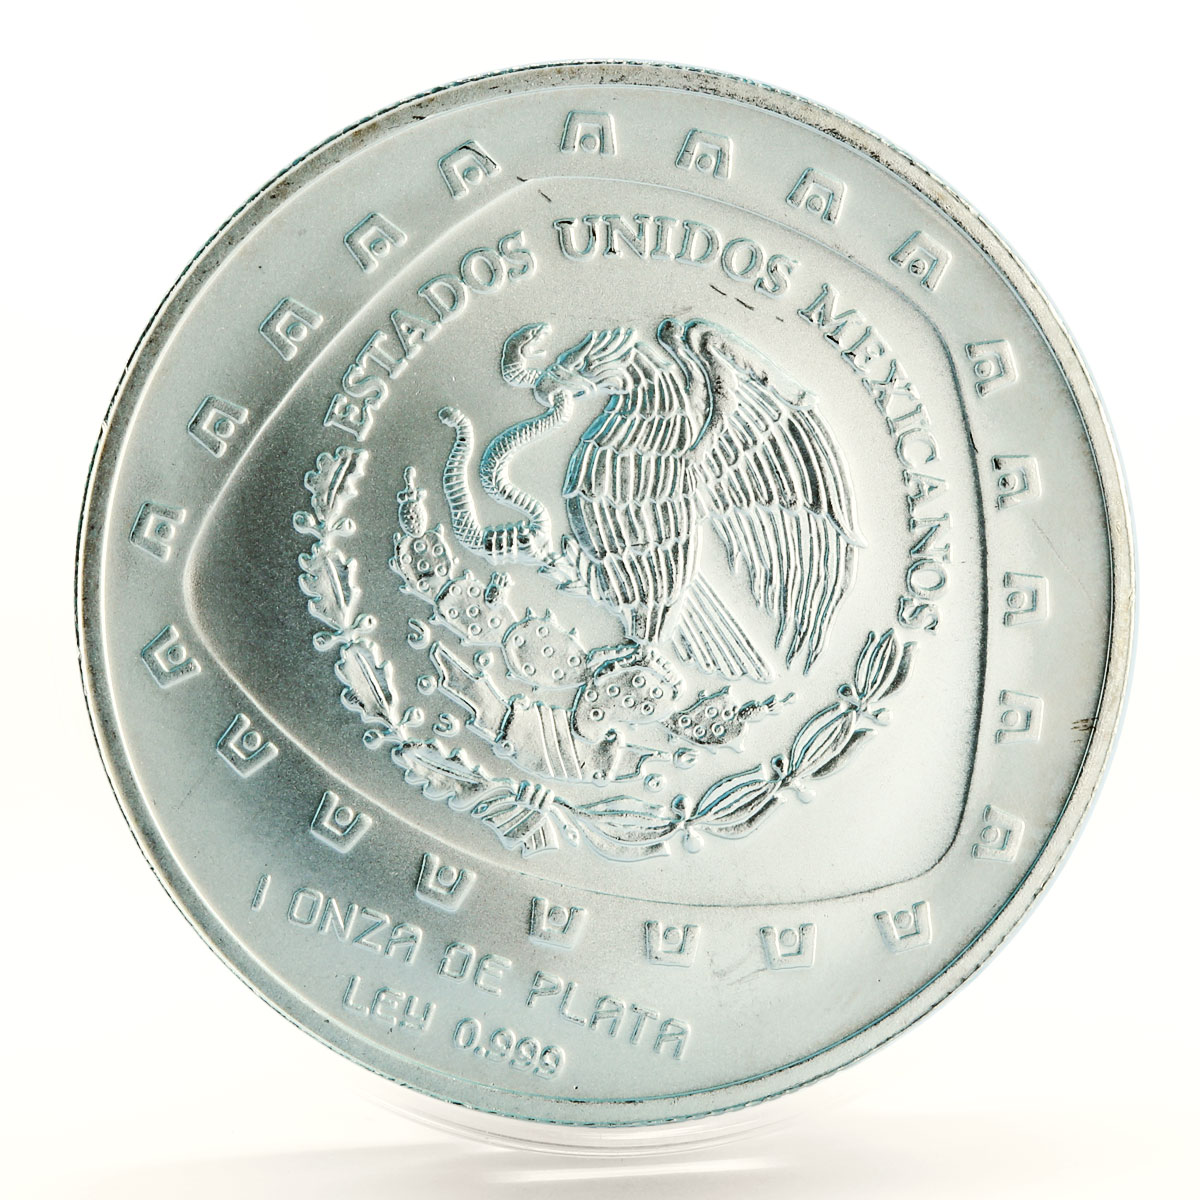 Mexico 5 pesos Serpiente con Craneo Snake Skull silver coin 1998